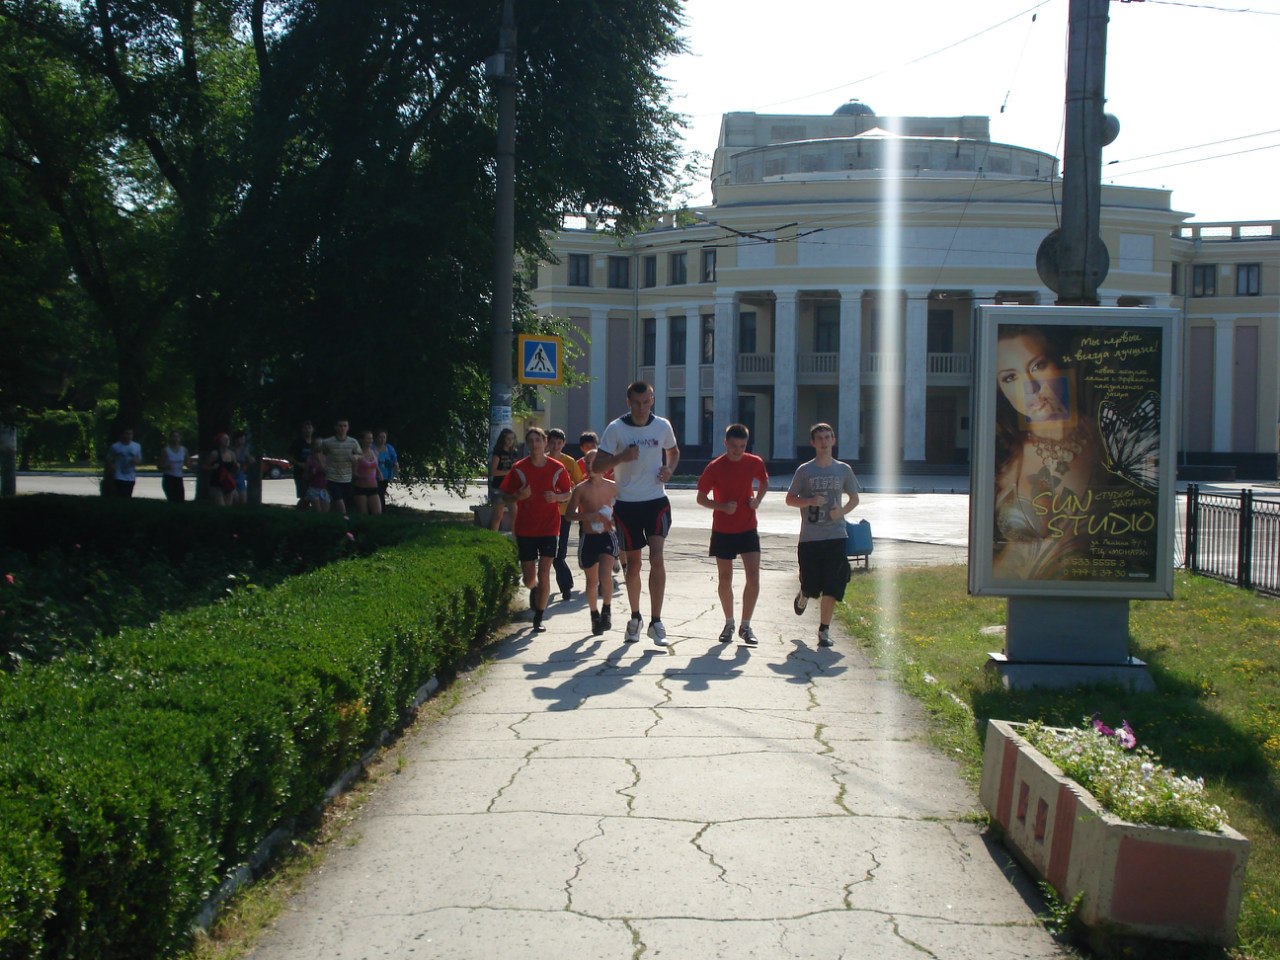 Состоялась Приднестровская пробежка в Тирасполе (1.07.2012)